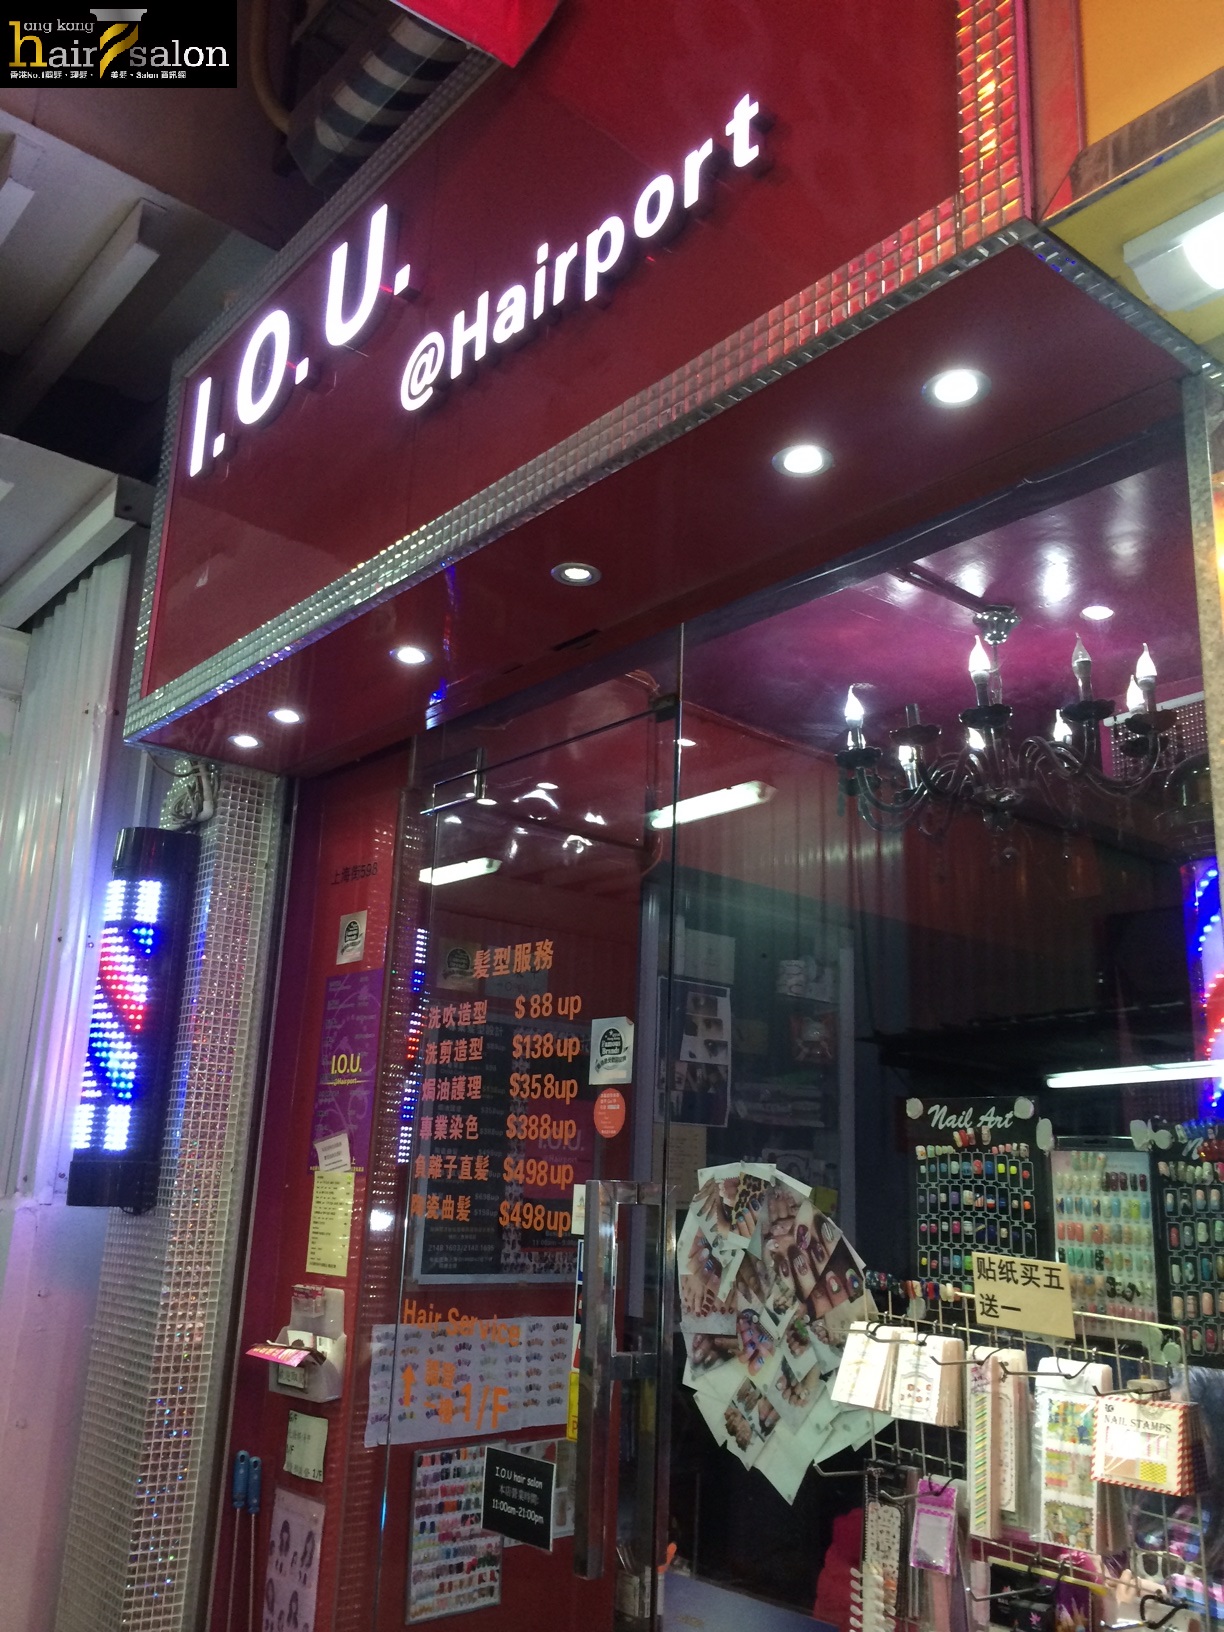 髮型屋Salon集团IOU Hair Salon (上海街) @ 香港美髮网 HK Hair Salon